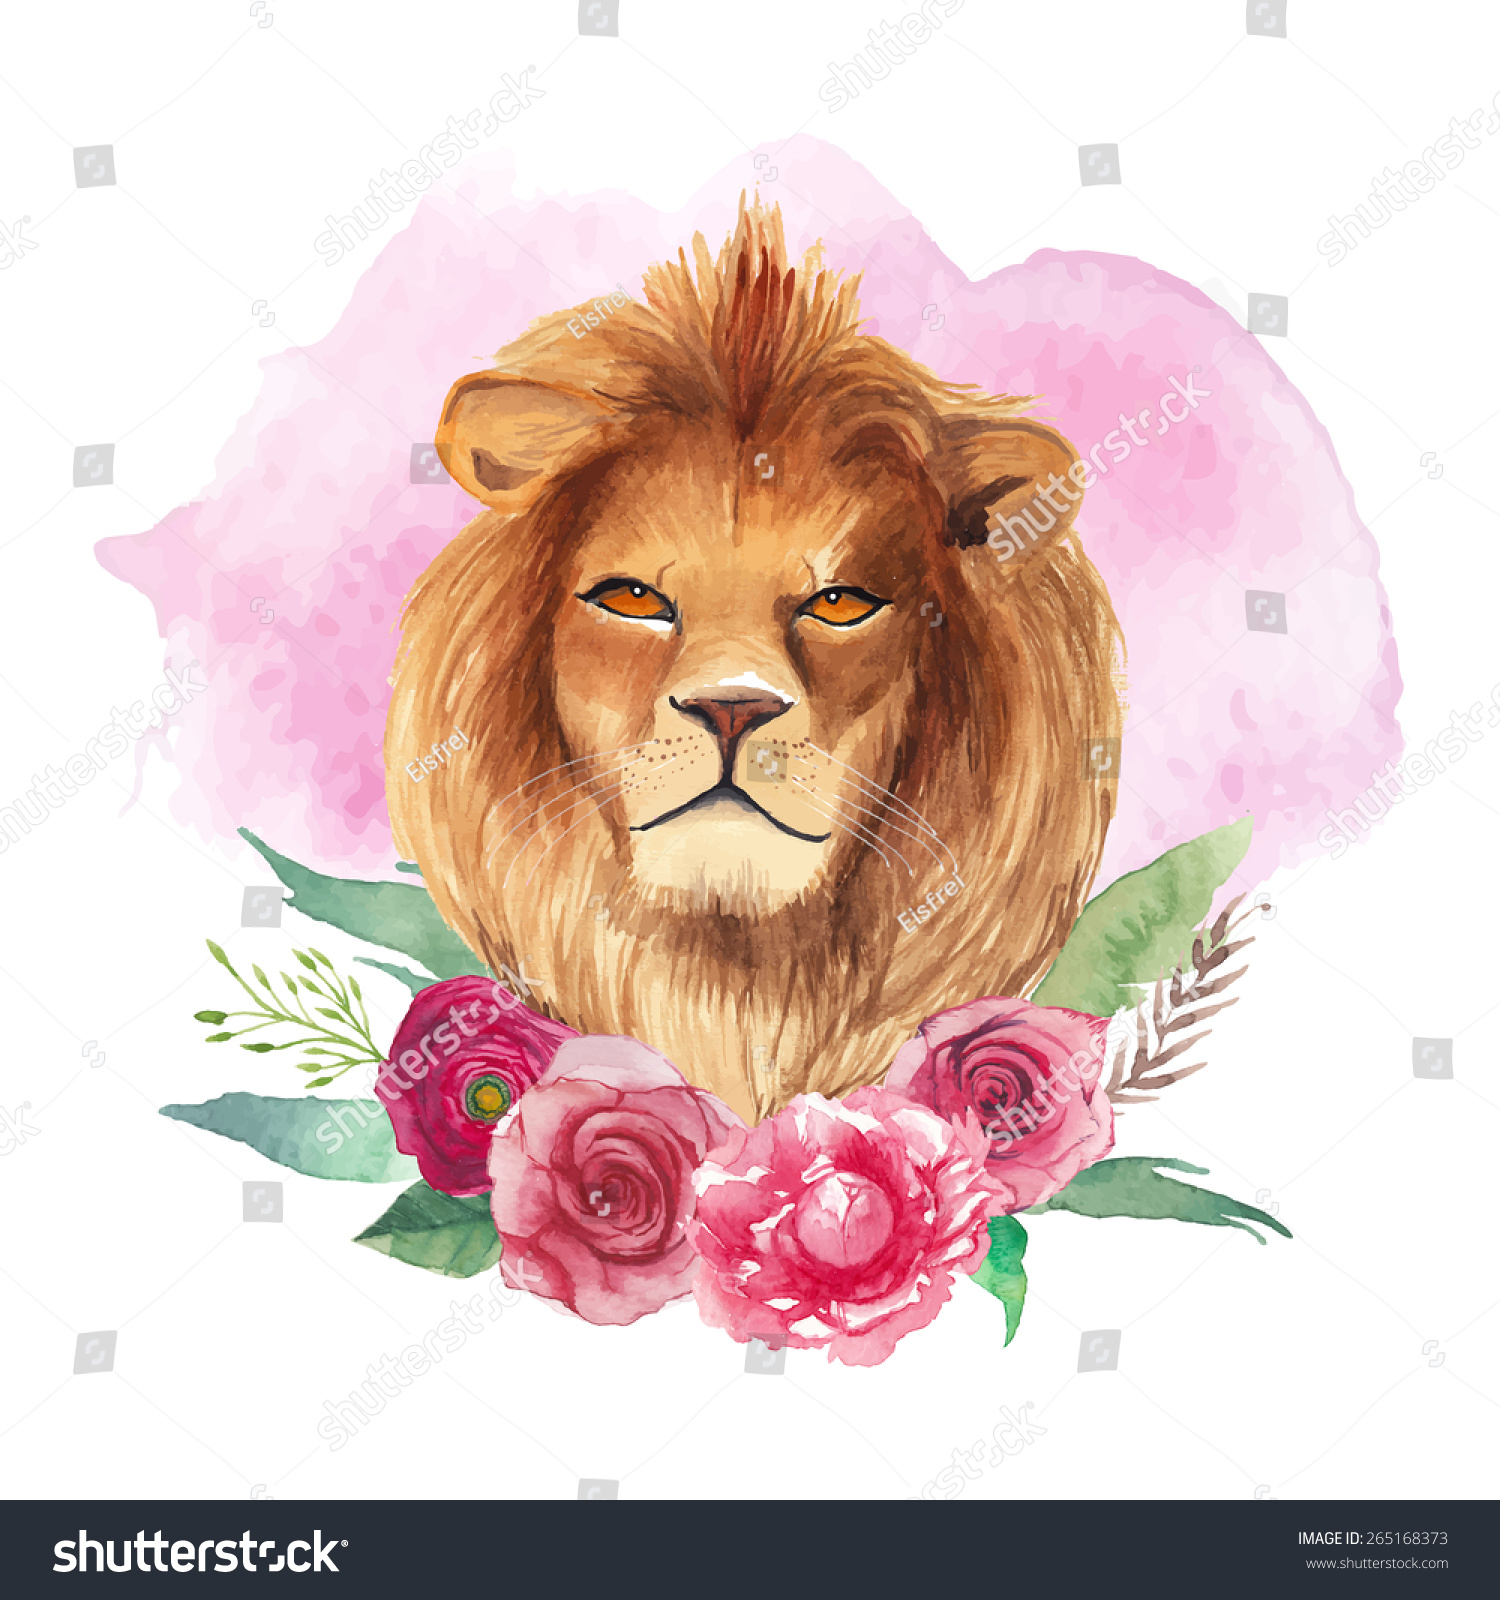 день рождения у льва